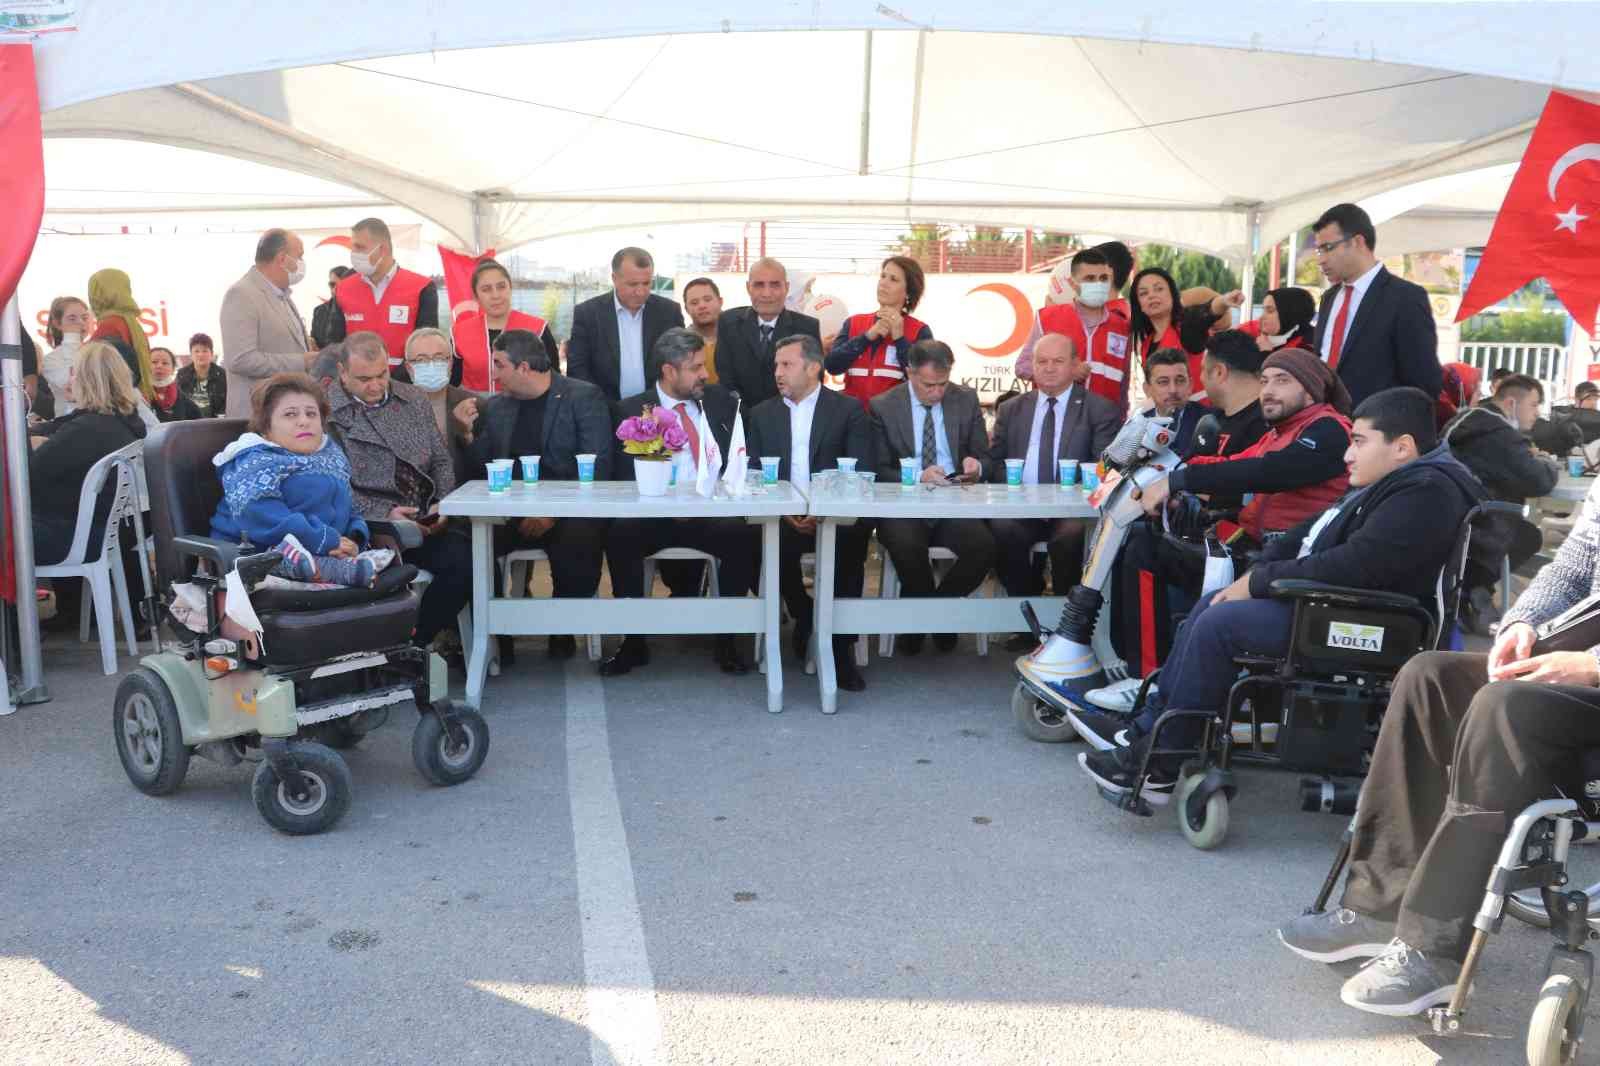 Adana’da engelliler Spor ve Kaynaştırma Şöleni’nde buluştu #adana